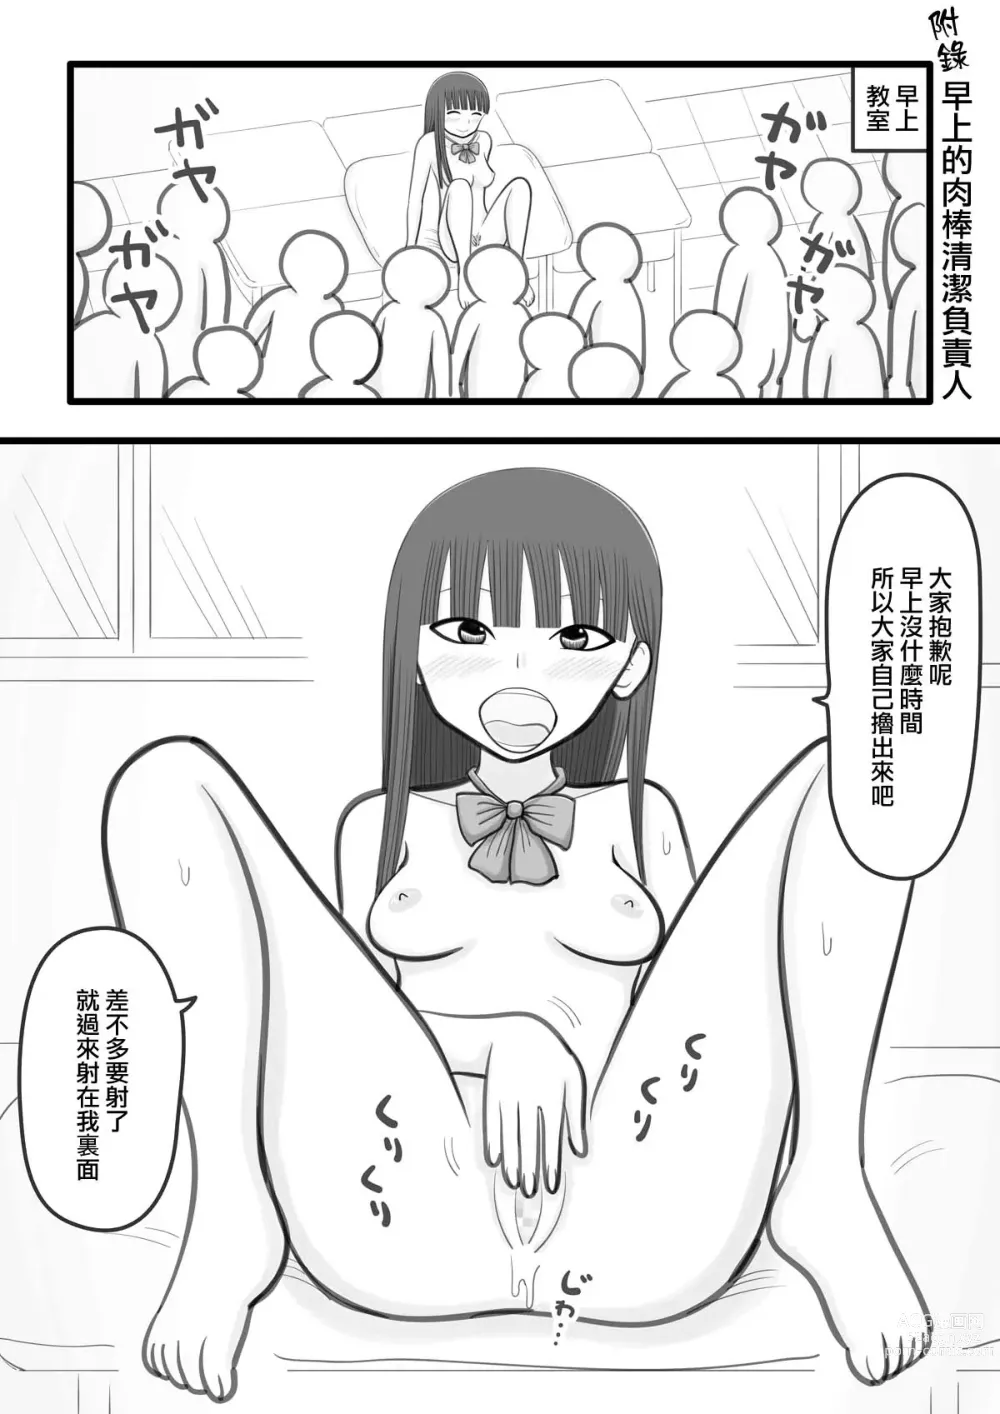 Page 16 of doujinshi 我喜歡的女孩子是肉棒清潔負責人